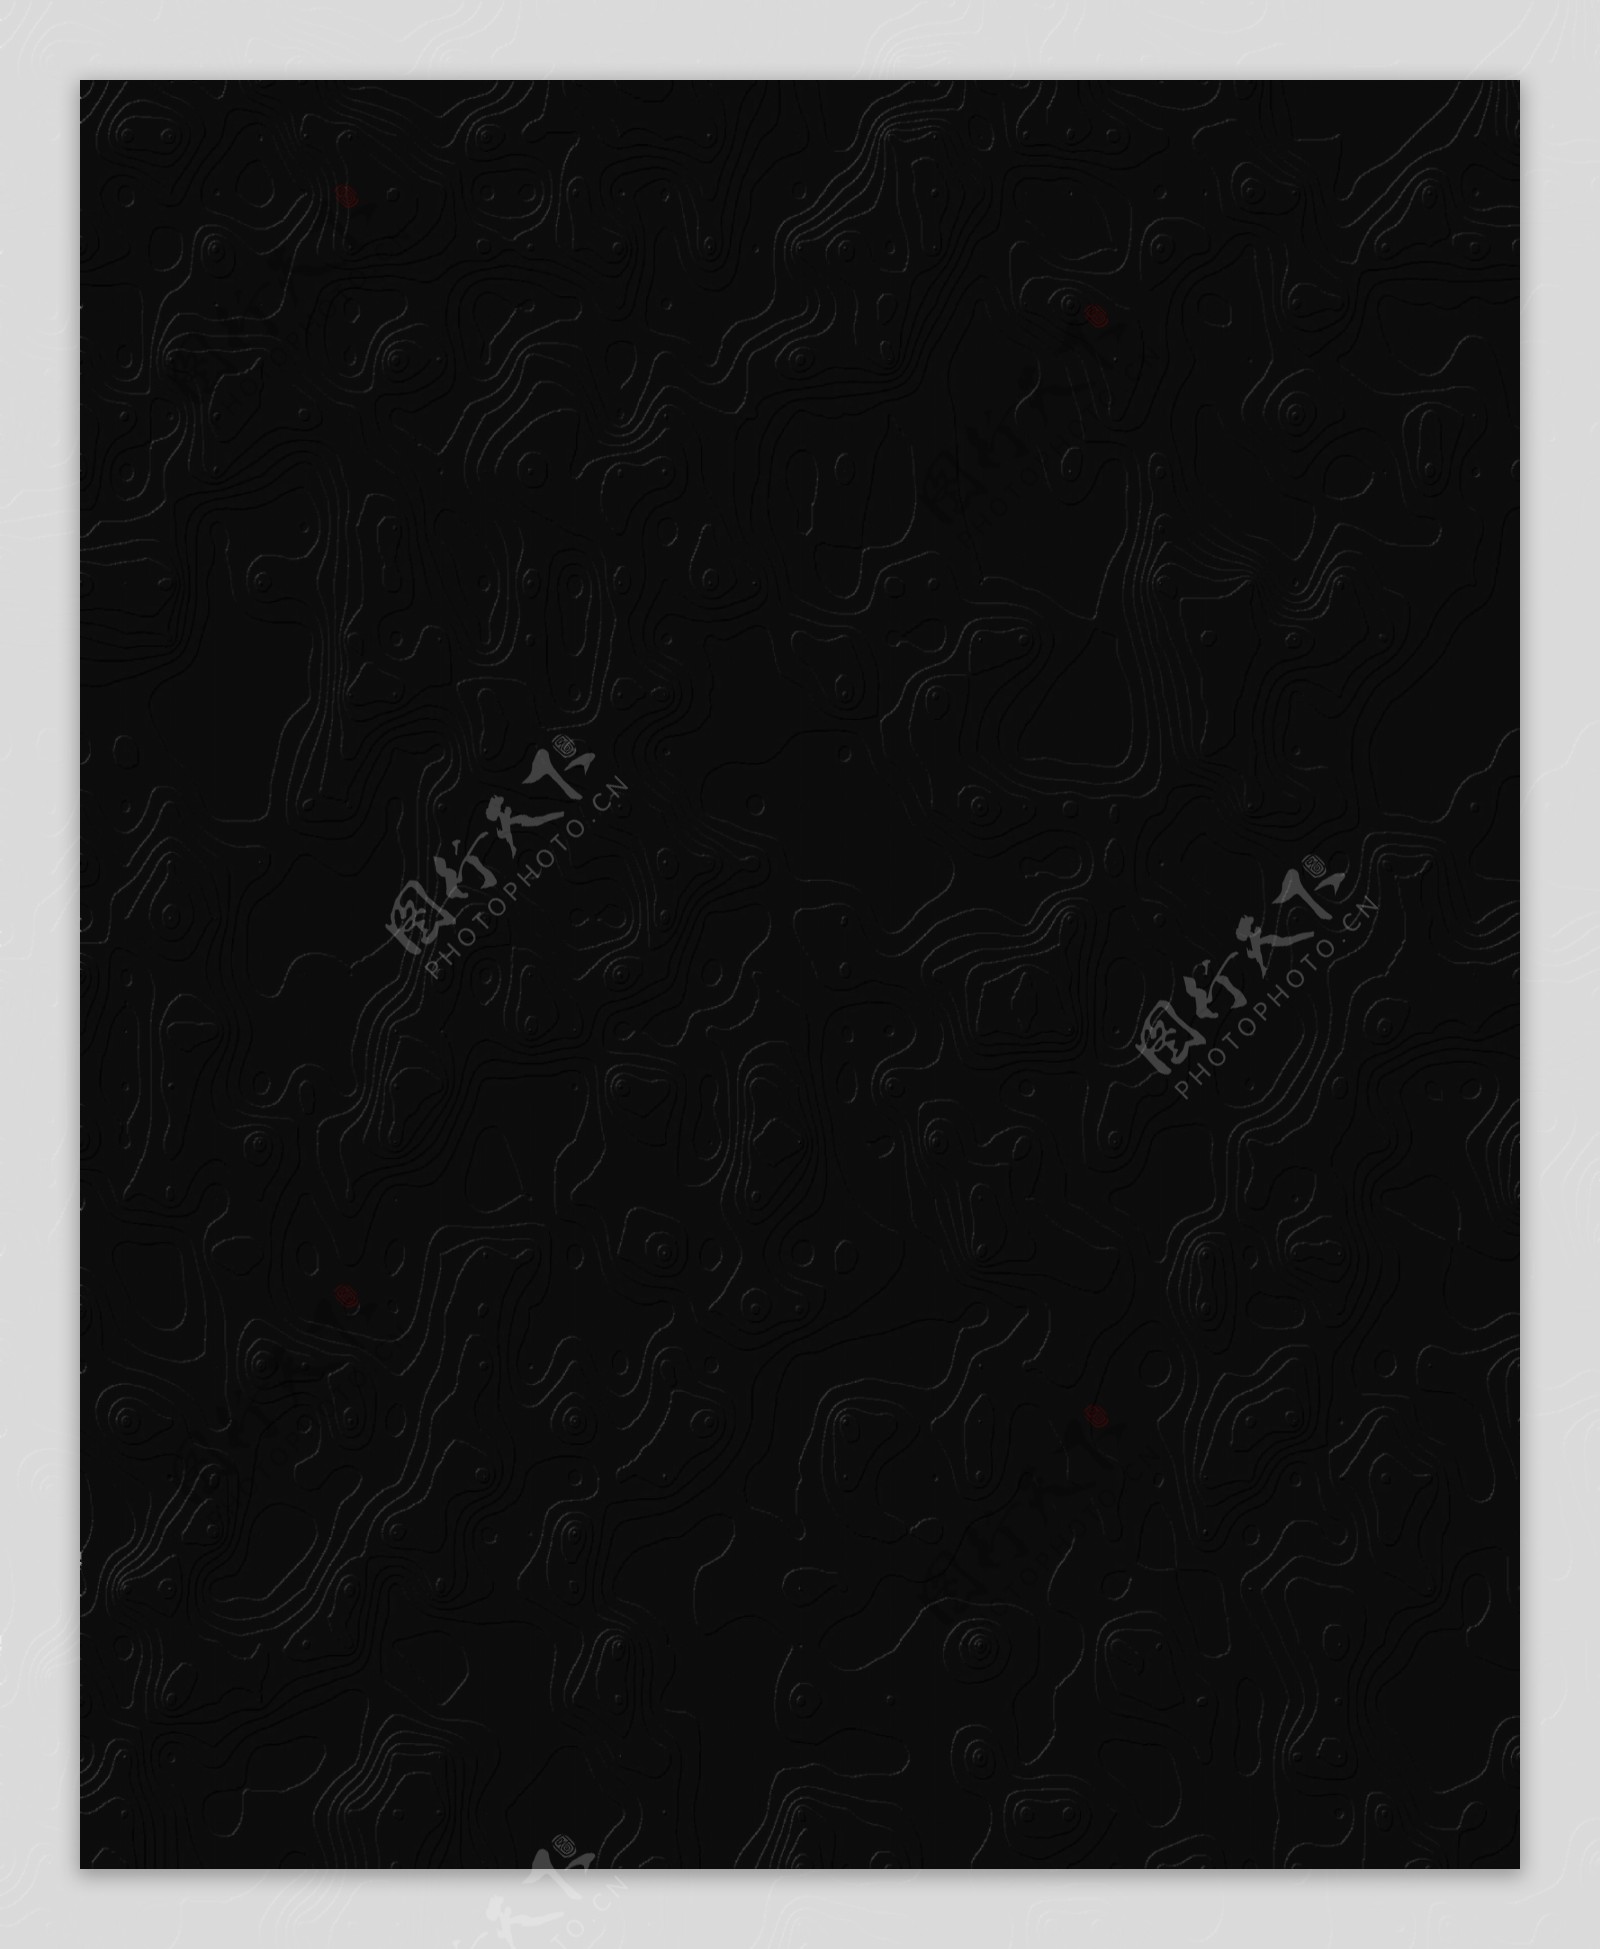 黑色背景素材图片下载-素材编号11629894-素材天下图库